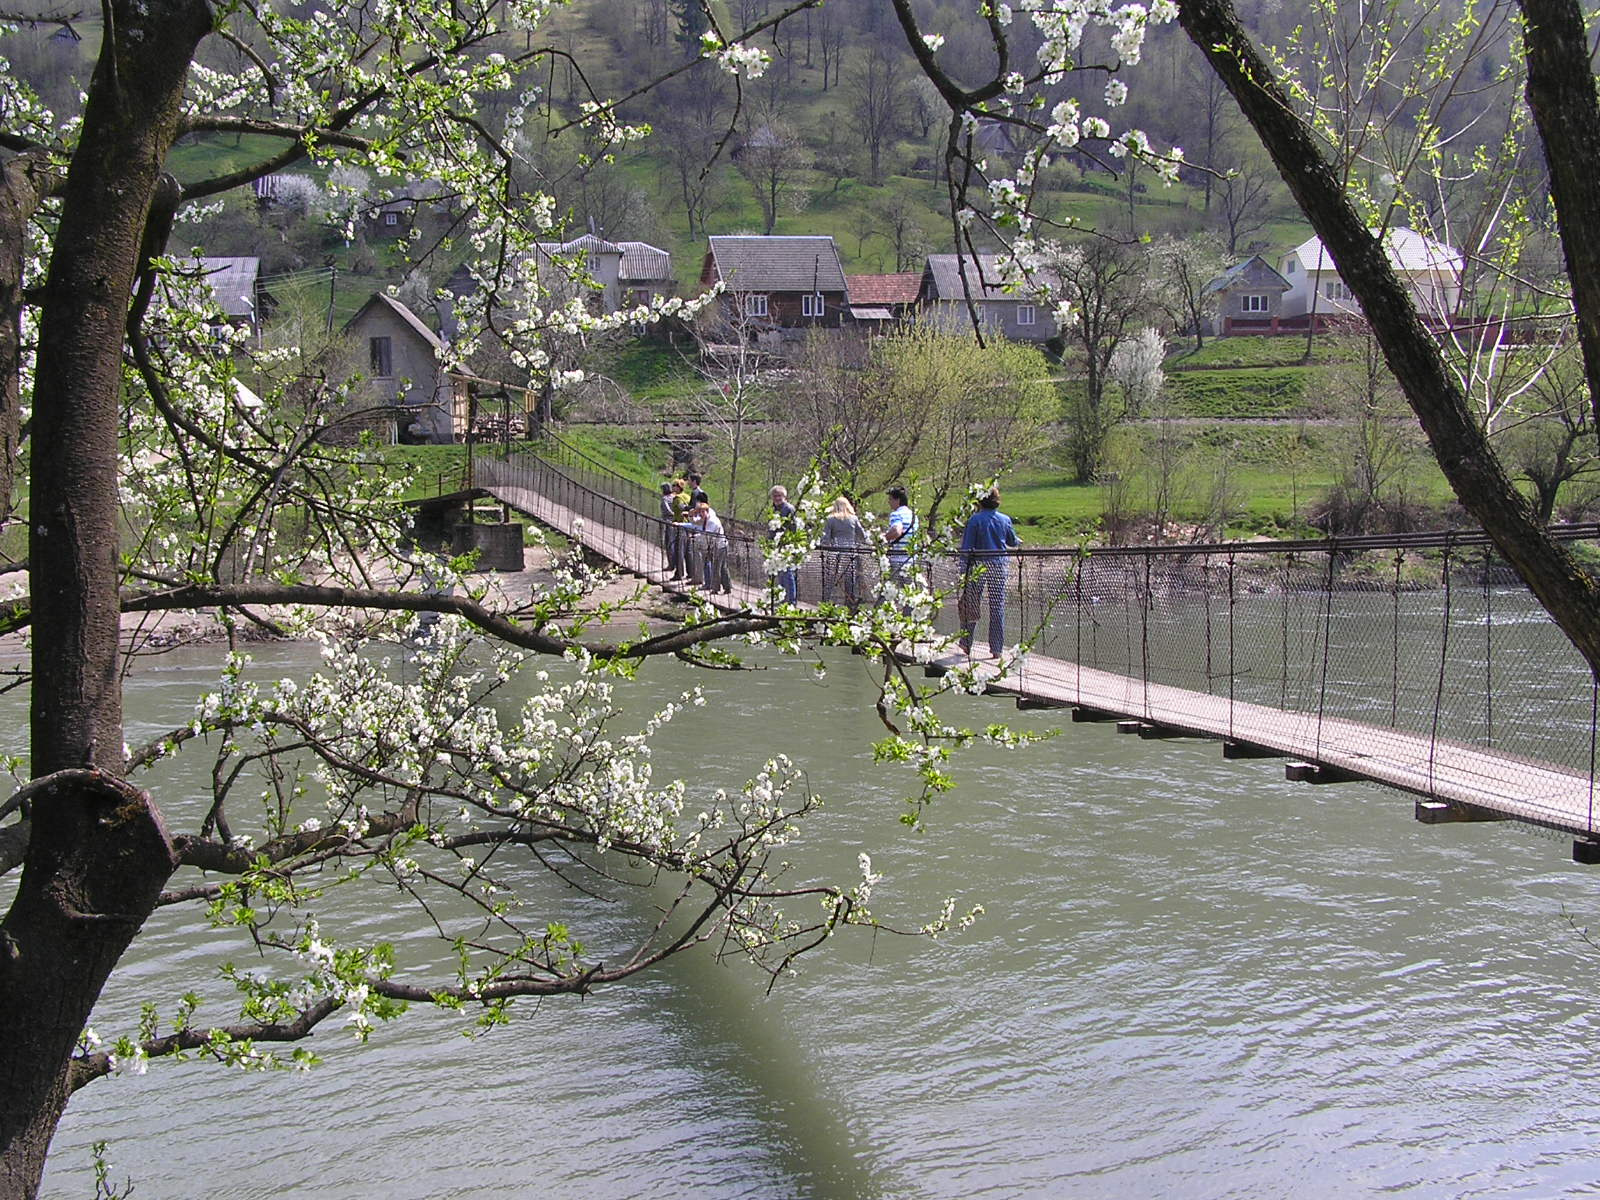 0 159 Asszonyvallató híd a Tiszán